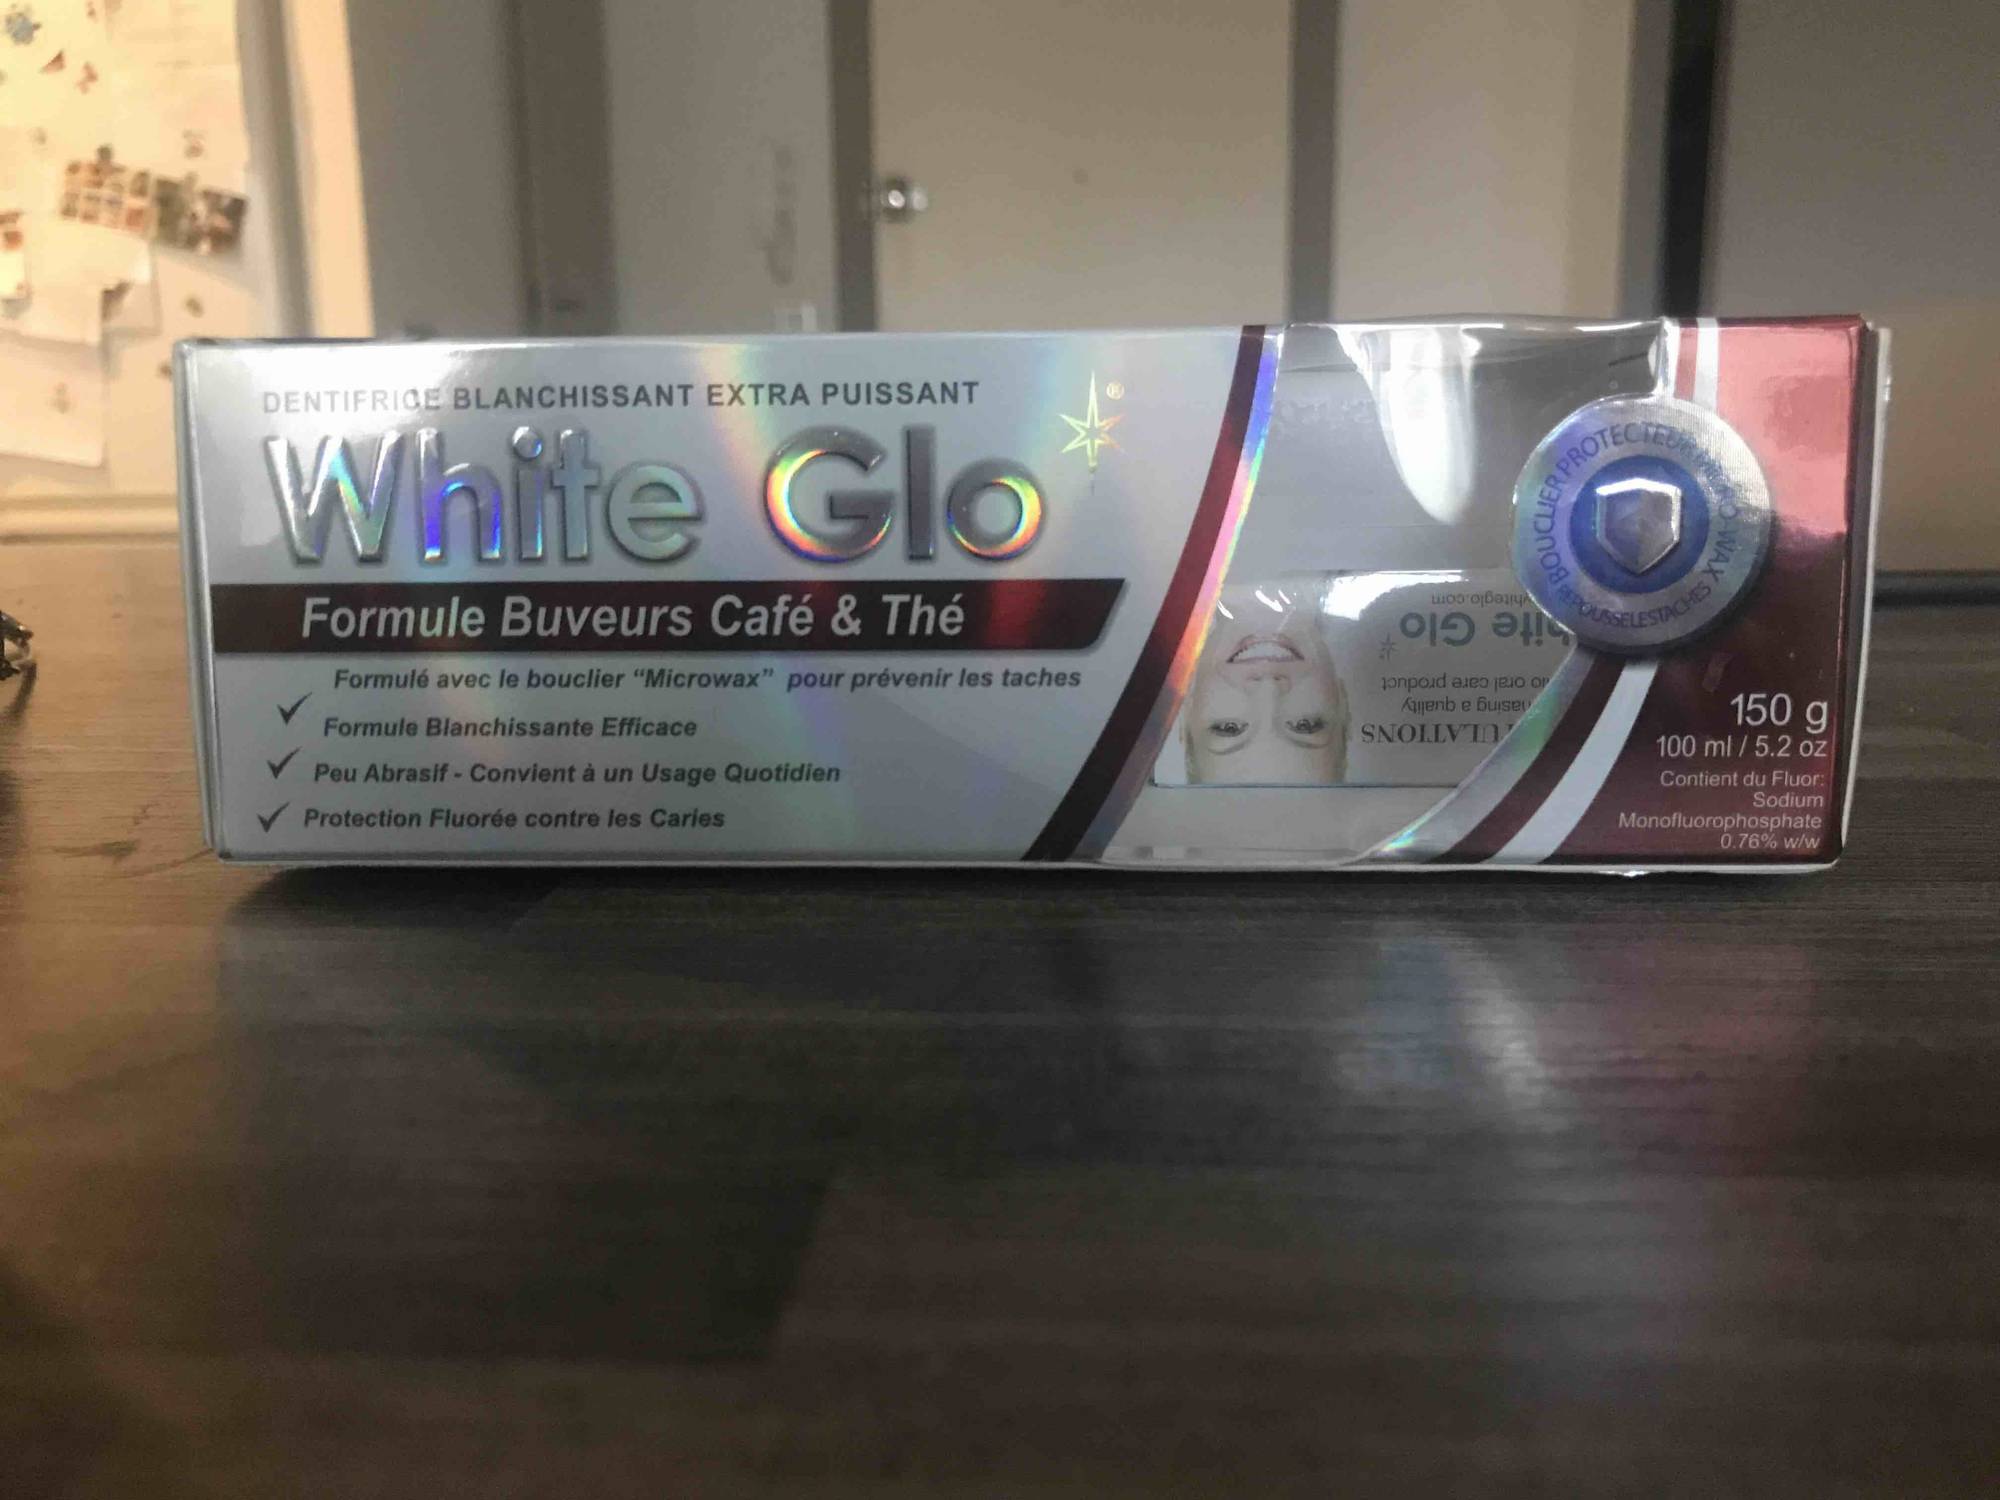 WHITE GLO - Formule buveurs Café & Thé - Dentifrice blanchissant extra puissant